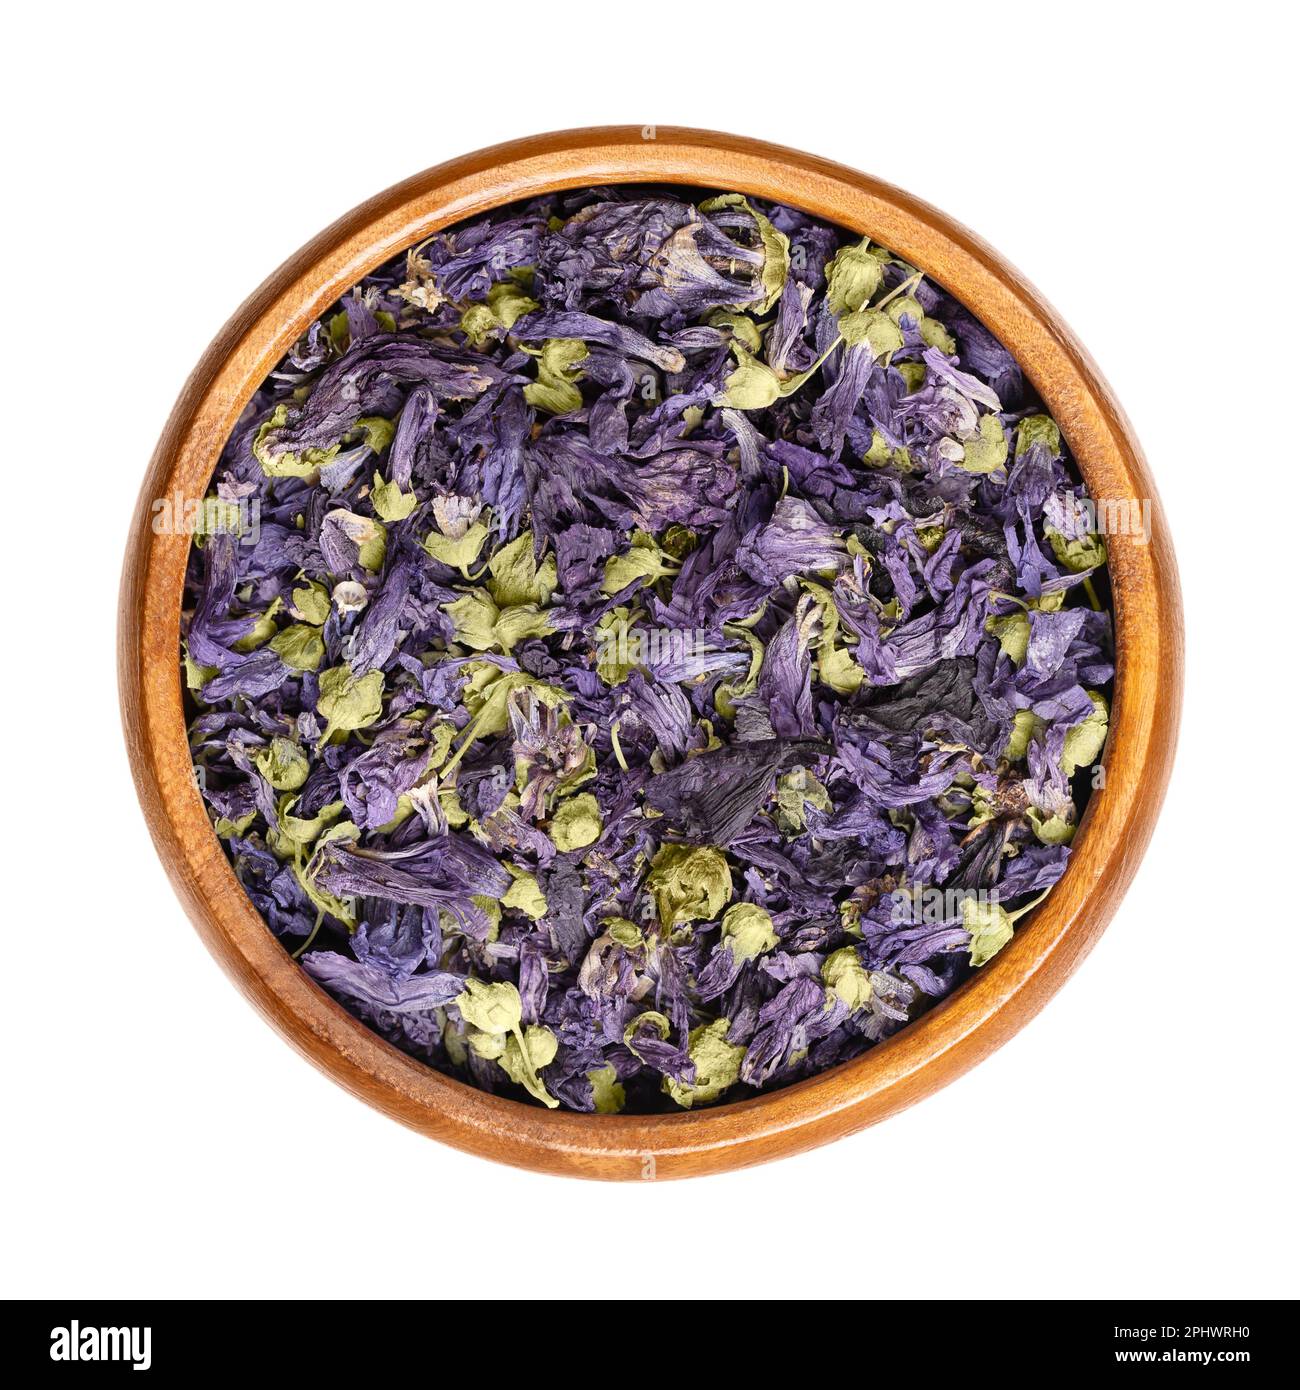 Fleurs de thé mauve séchées, dans un bol en bois. Têtes de fleurs mauves de Malva sylvestris, également connues sous le nom de malow commun, utilisées pour le thé à base de plantes. Banque D'Images